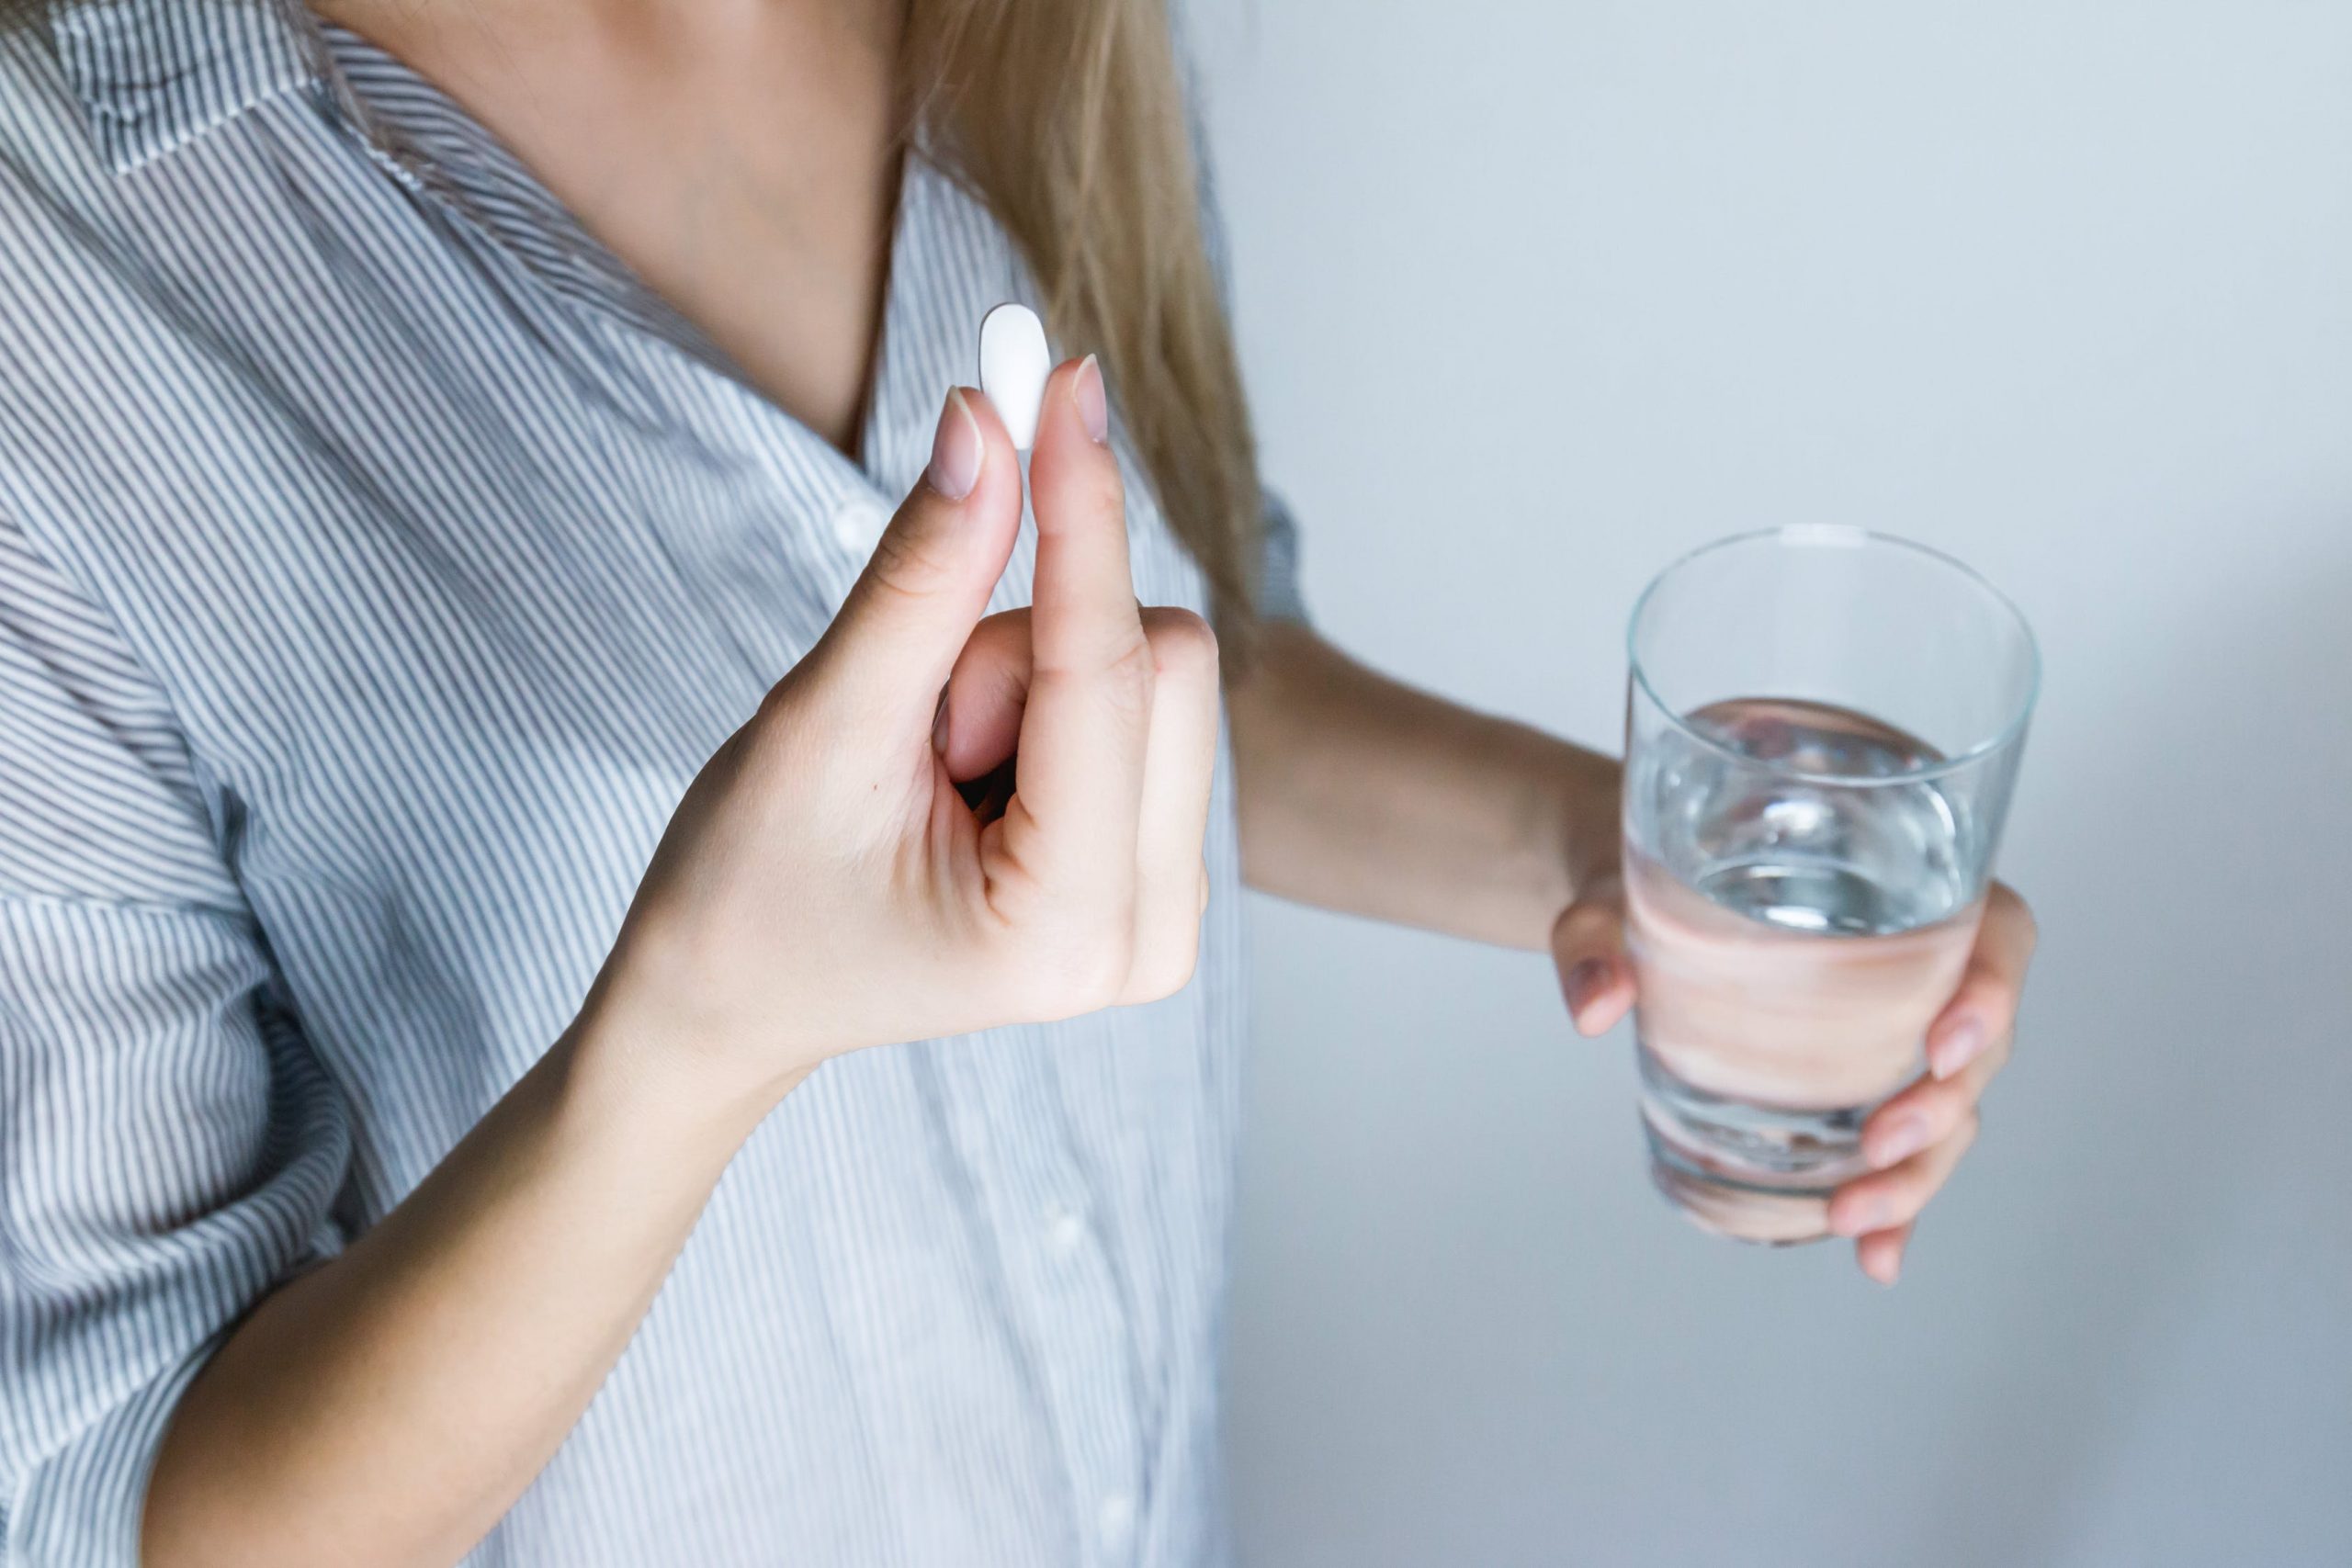 Чем грозит глотание таблетки без воды?